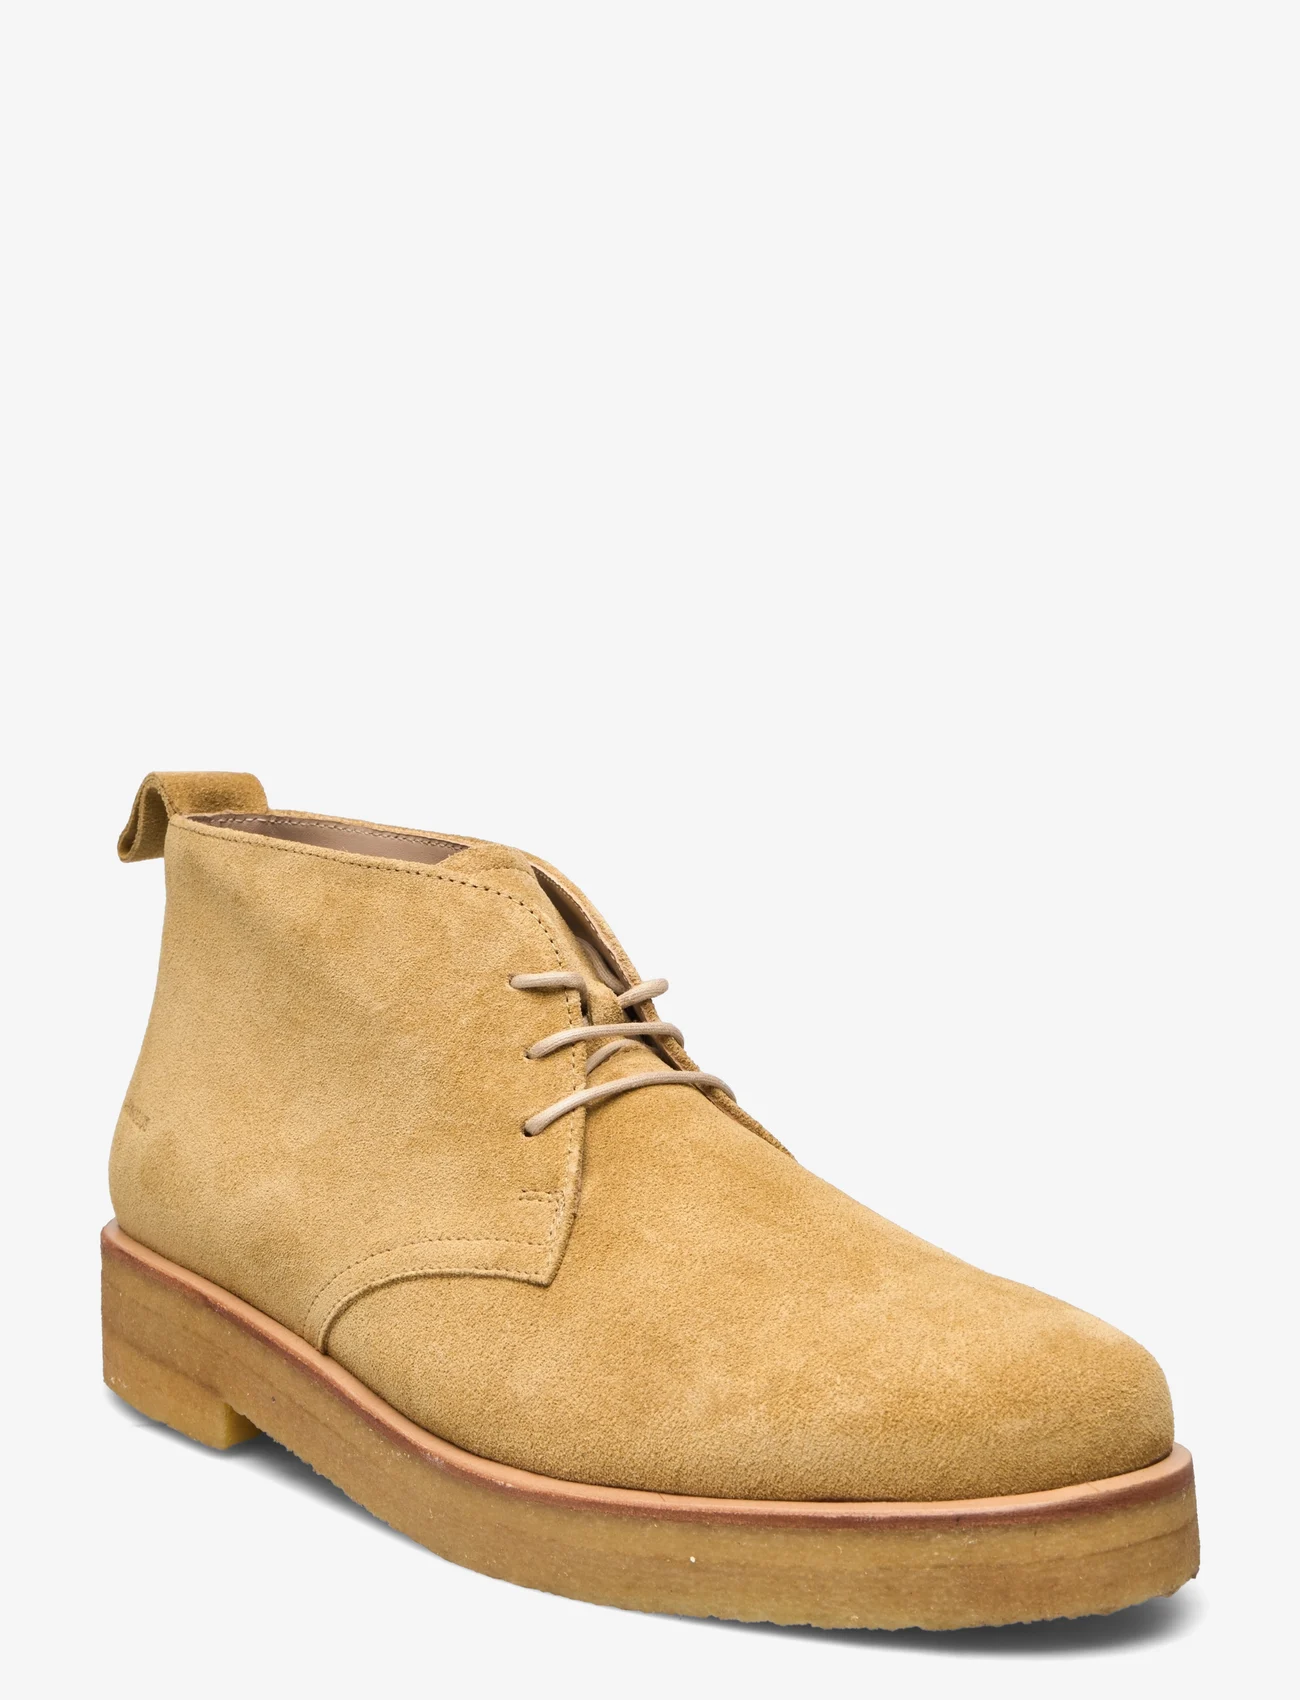 ANGULUS - Shoes - flat - desert boots - 2239 light mustard - 0